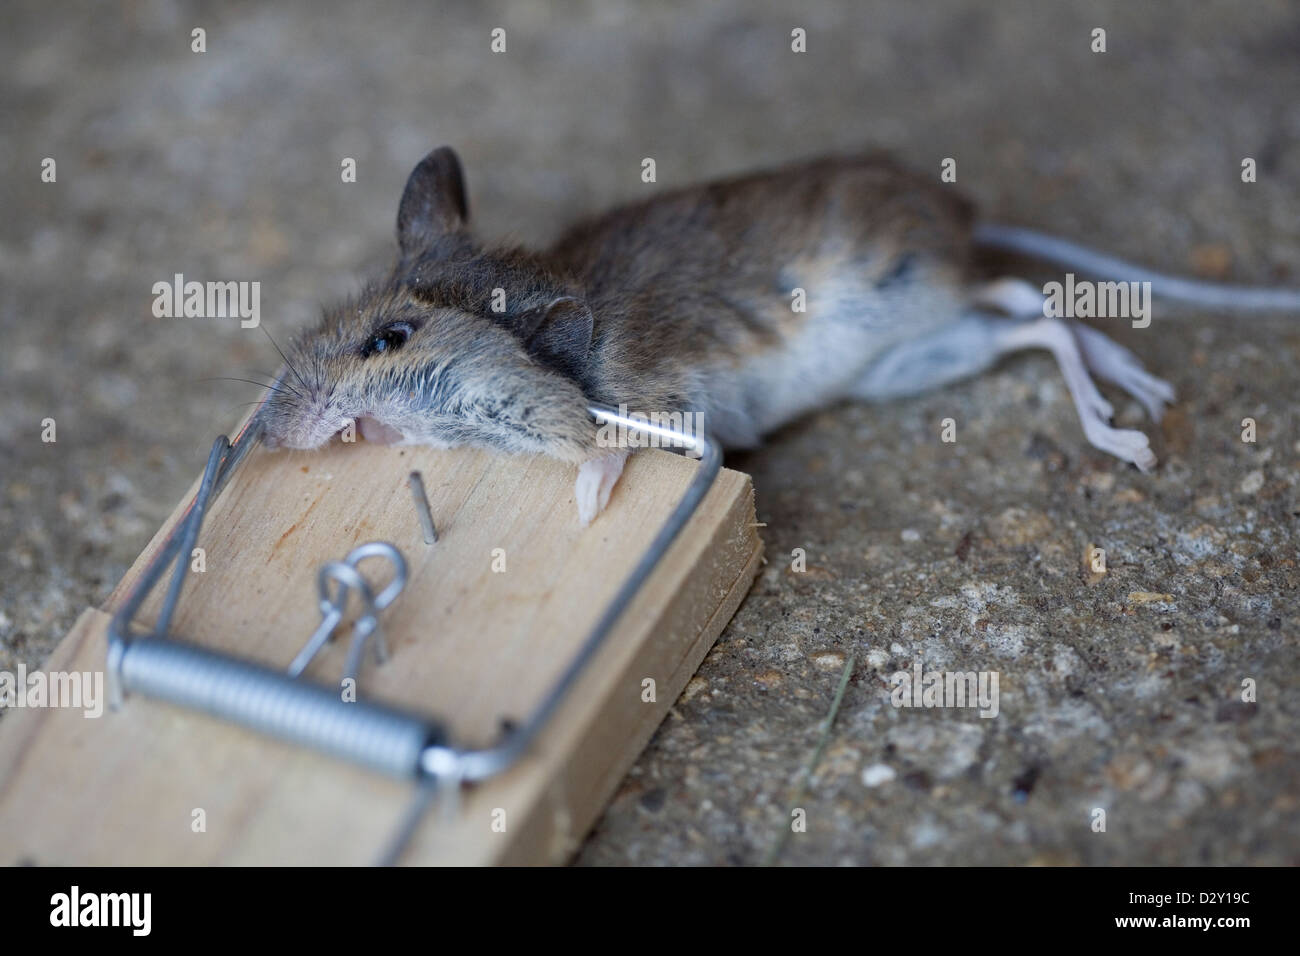 Una casa común, ratón (Mus musculus), muerto en una trampa de ratón de madera tradicionales. Foto de stock